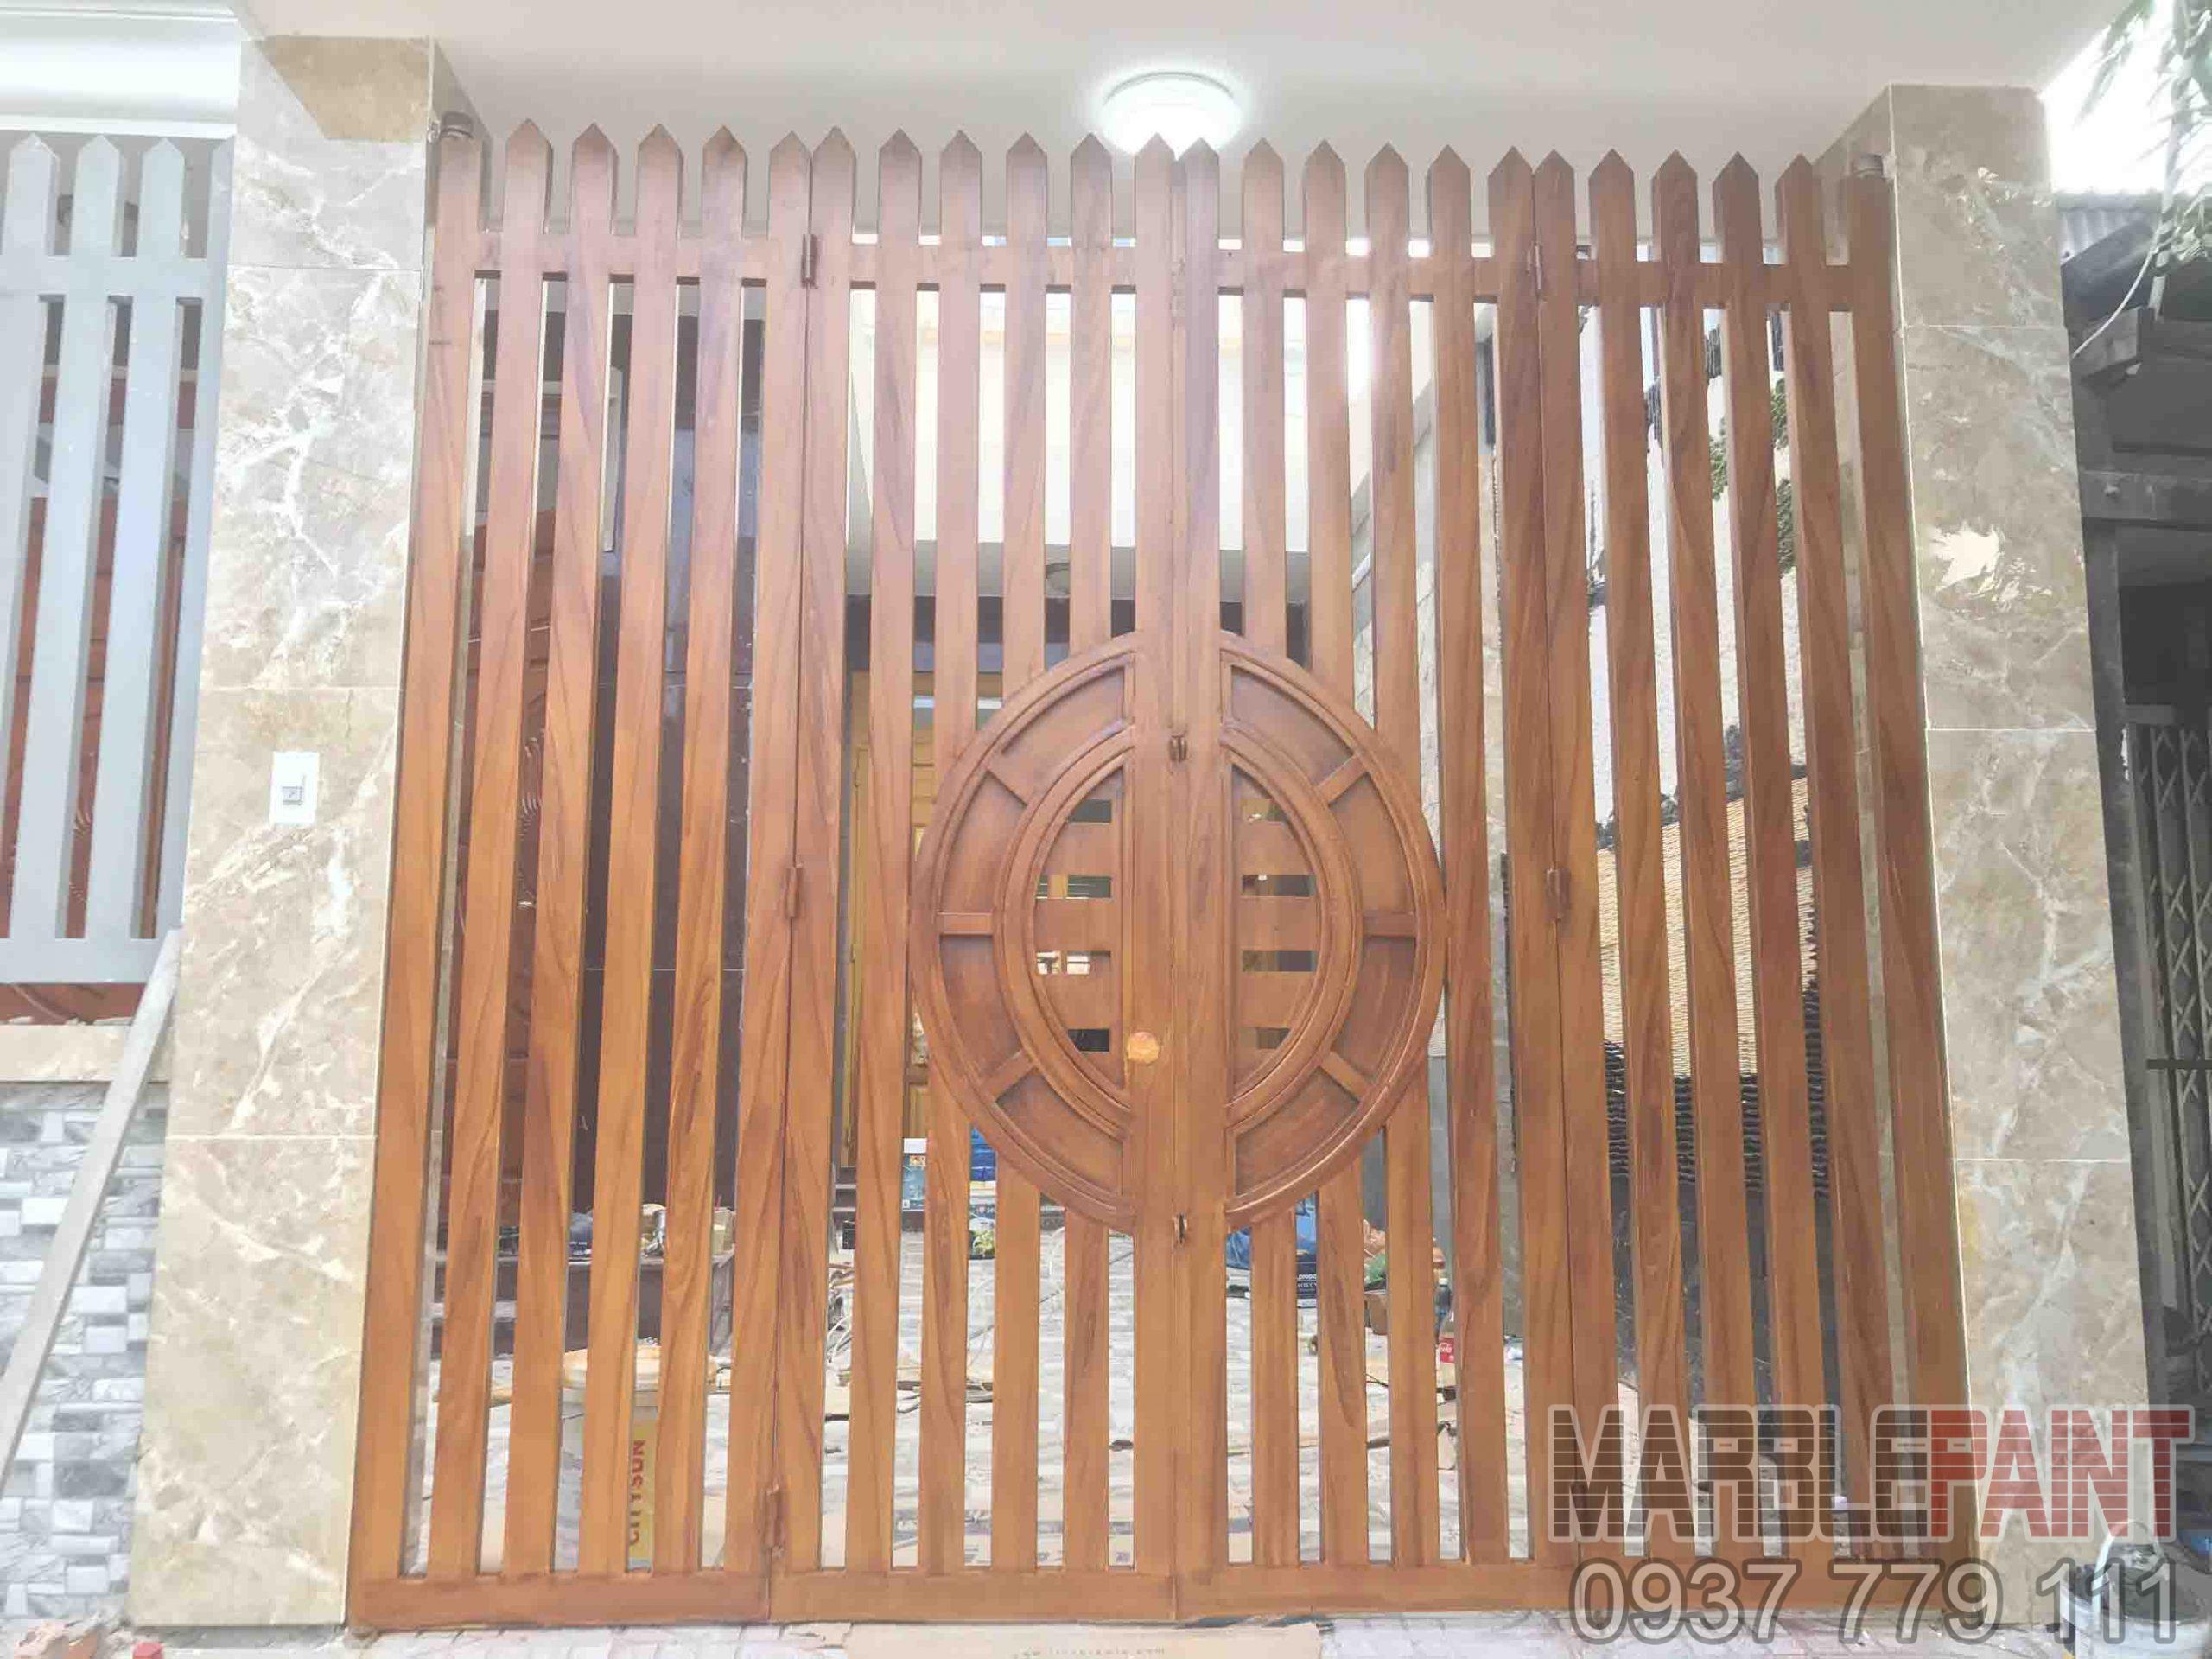 Với mẫu cửa sắt màu sơn giả gỗ, bạn sẽ có được sản phẩm vừa chắc chắn vừa đẹp mắt. Hãy để chúng tôi giúp bạn tạo ra những mẫu cửa sắt độc đáo và đầy sự lôi cuốn.